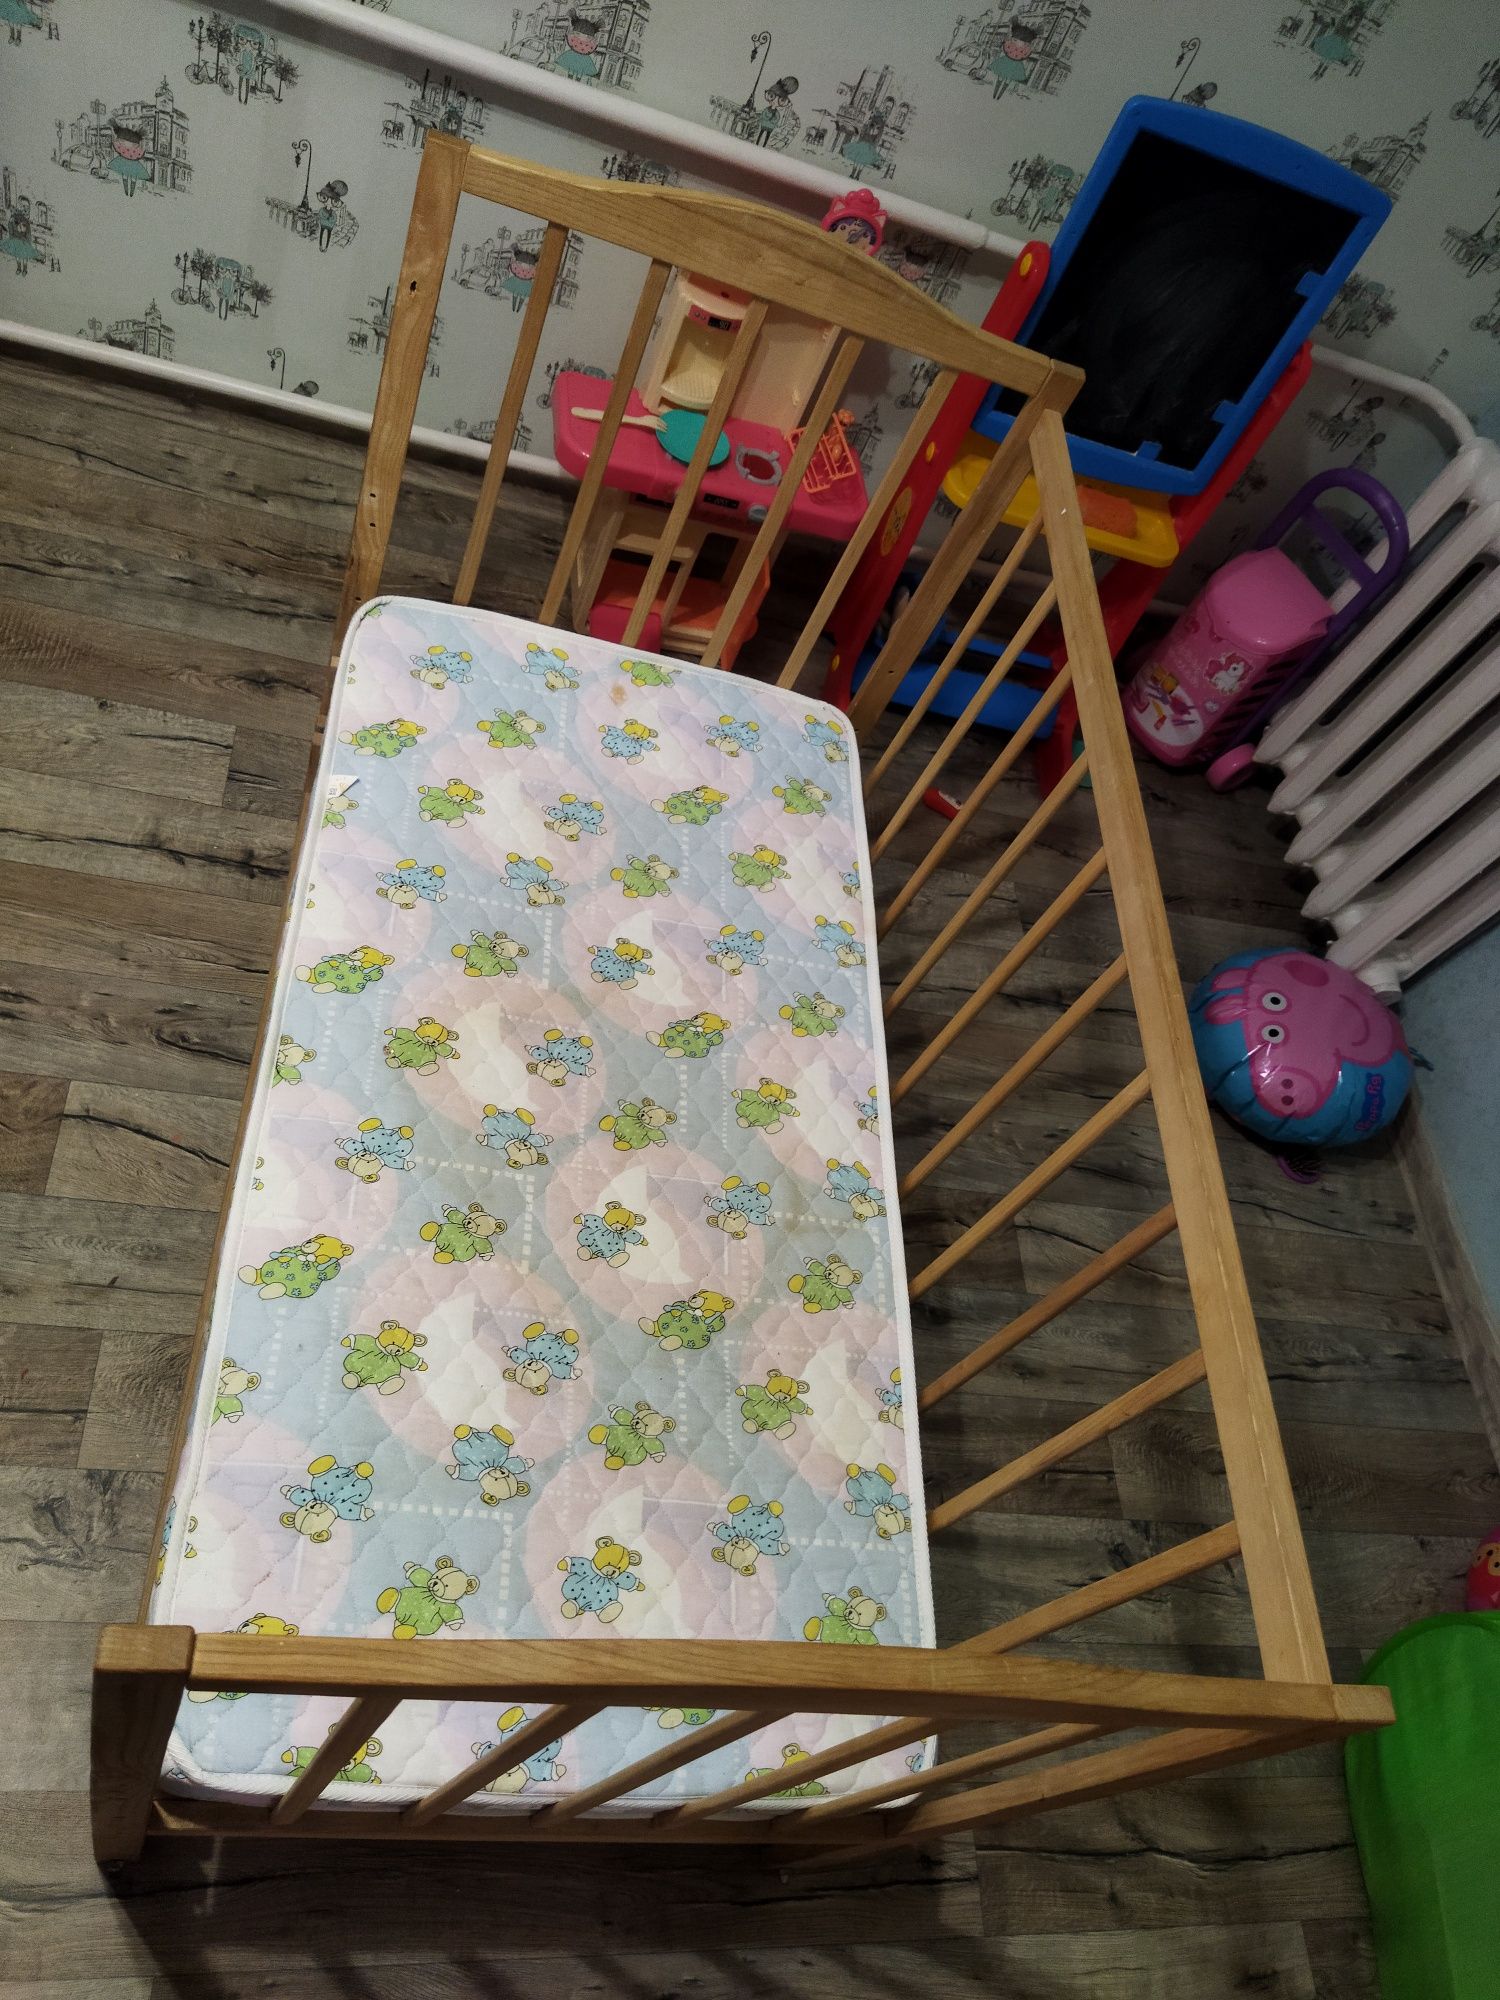 Кроватка дитяча з матрацом